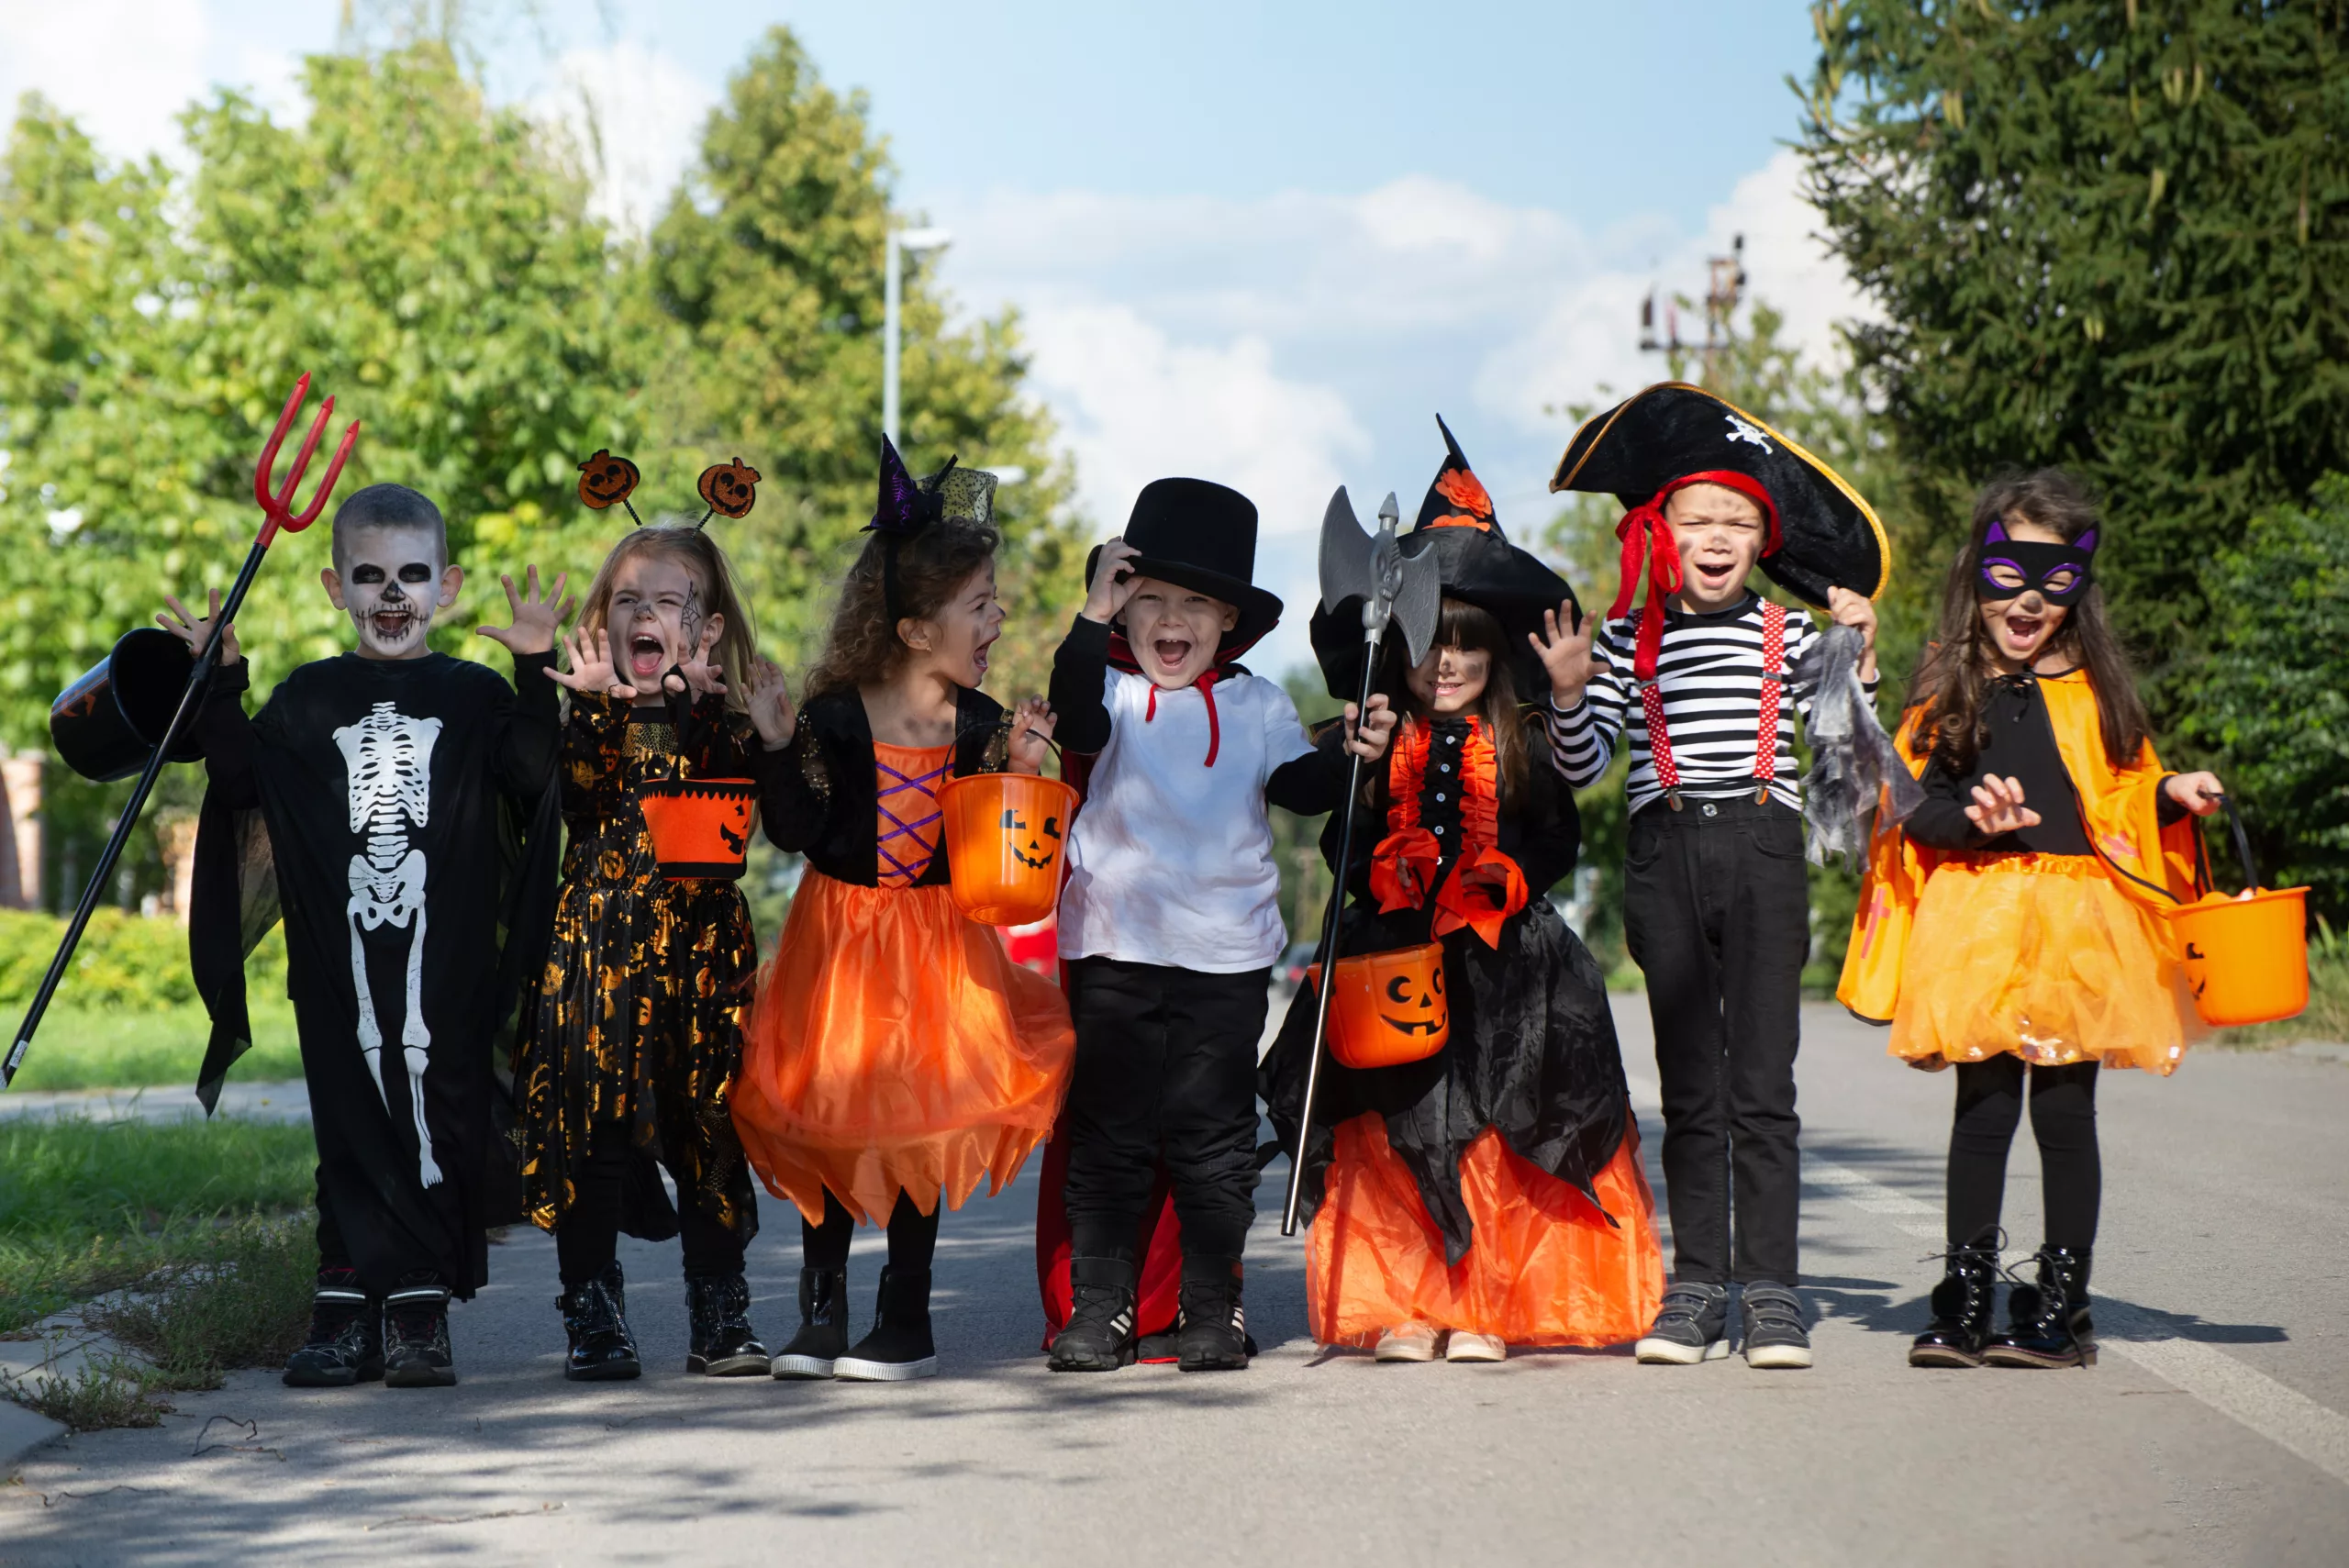 kids trick or treating in their neighborhood wearing Halloween costumes